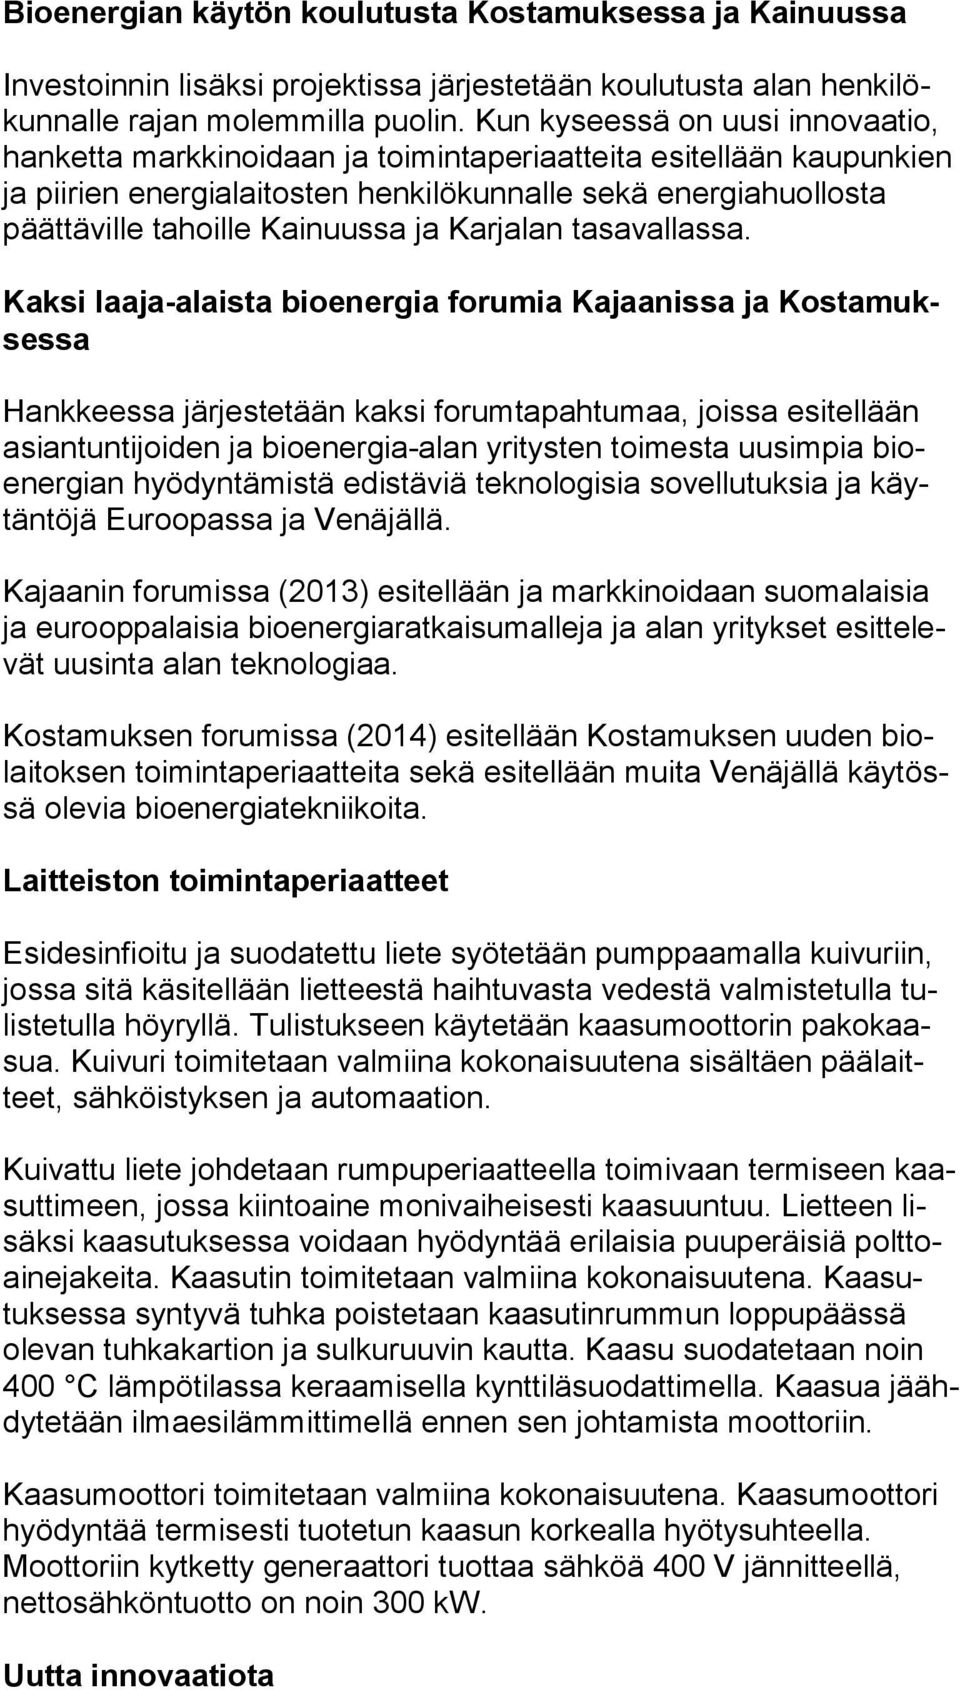 Kainuussa ja Karjalan tasavallassa.